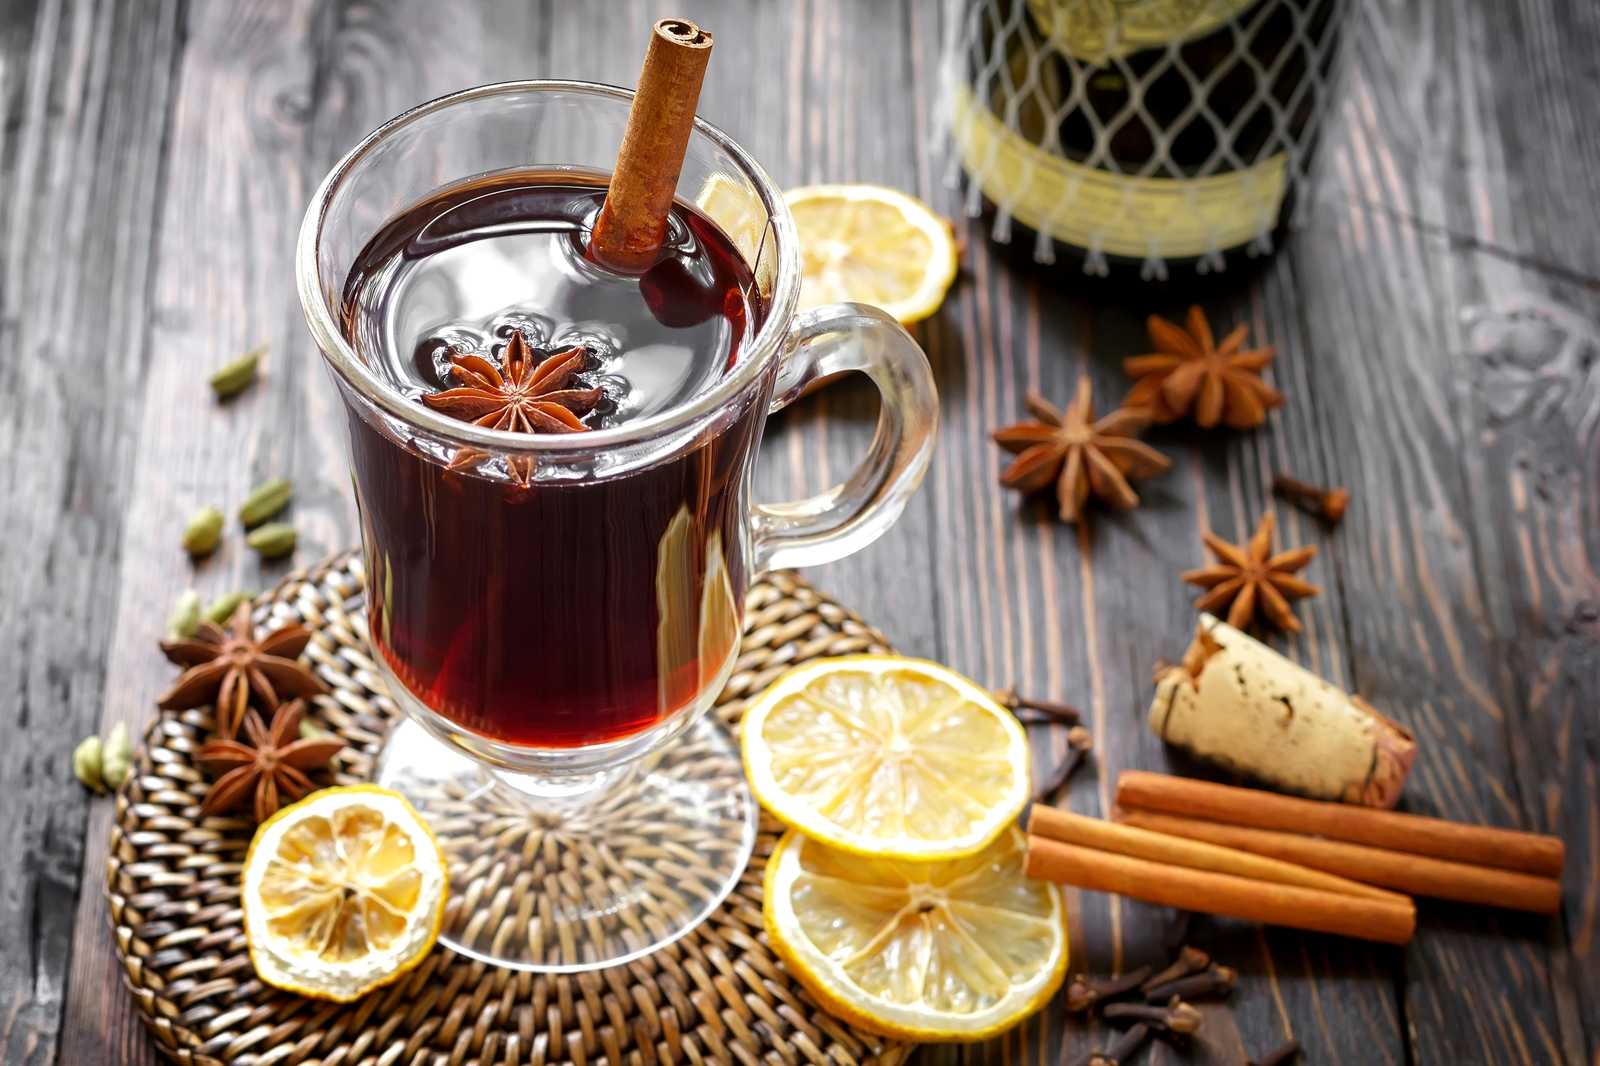 Как приготовить алкогольный глинтвейн в домашних условиях – 3 рецепта горячего зимнего напитка